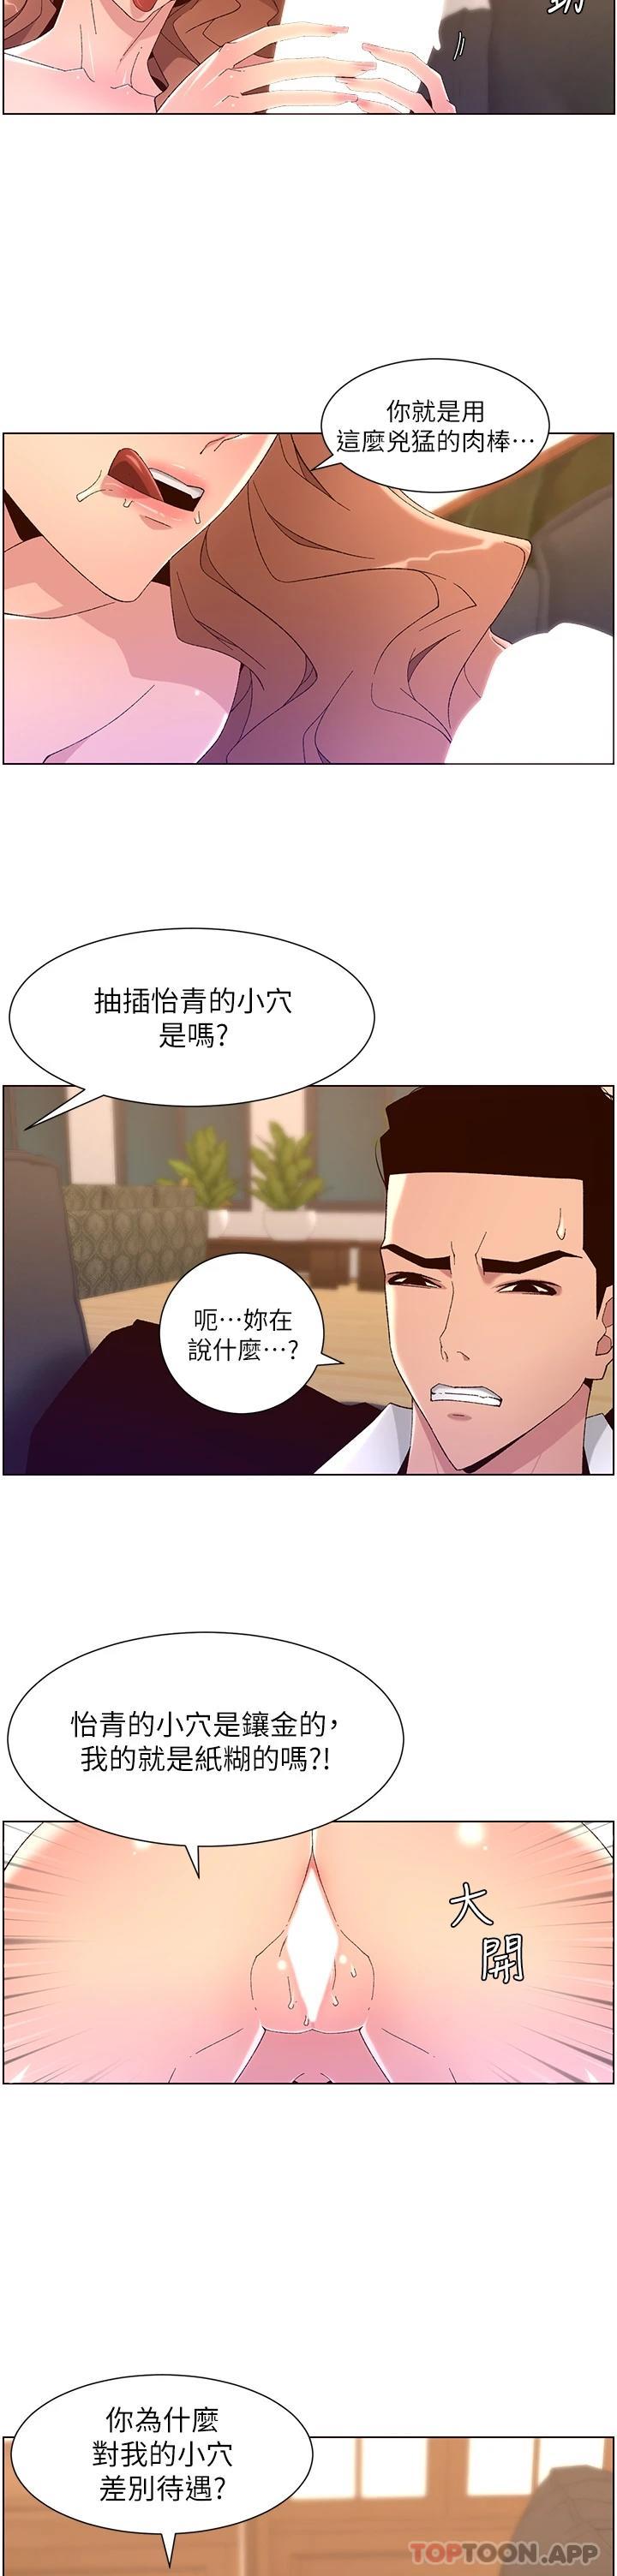 韩国污漫画 帝王App 第46话 寂寞阿姨的Q弹粉鲍 3